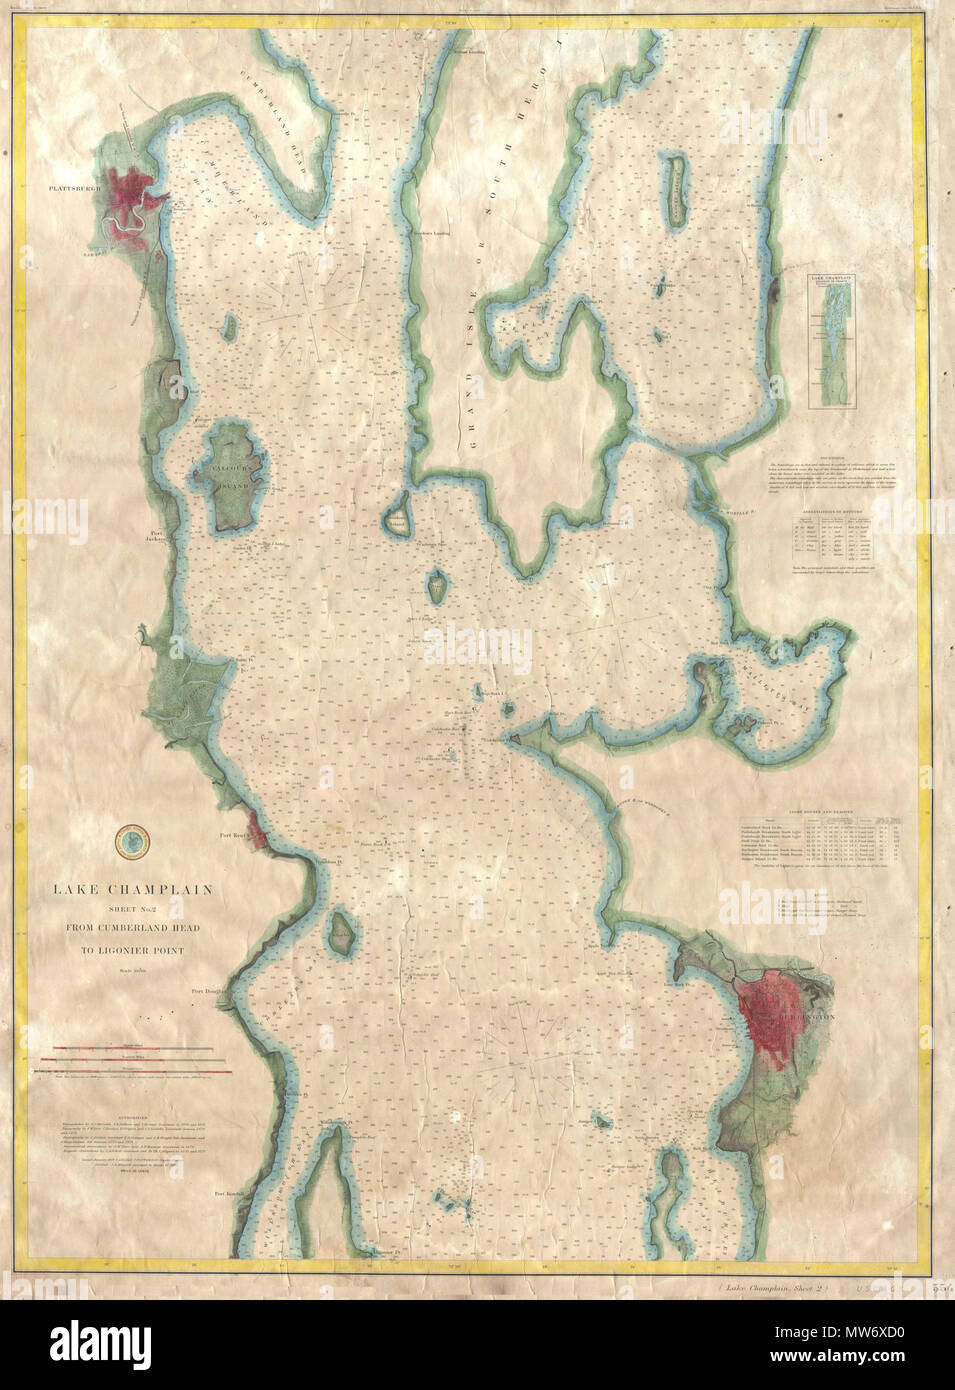 . Lake Champlain Blatt Nr. 2 von Cumberland Kopf Ligonier Punkt. Englisch: eine seltene Hand gefärbt 1874 Küsten Karte des nördlichen Teil des Lake Champlain von Cumberland Kopf Ligonier Punkt. Umfasst die Städte von Burlington, Vermont und Plattsburgh, New York. Die Karte verfügt über Segelanweisungen und Hunderte von tiefenmessungen im gesamten Gebäude. Im Gegensatz zu den meisten Karten herausgegeben von der U.S.C.S., diese Karte wurde nie in einem Buch gefaltet zu werden. Vielmehr handelt es sich um eine extrem seltene unabhängige Ausgabe für tatsächliche Nautische verwenden. Gesichert mit alten Bettwäsche. Unter der Leitung von H.D. Ogden veröffentlicht. . 1874 10 Stockfoto